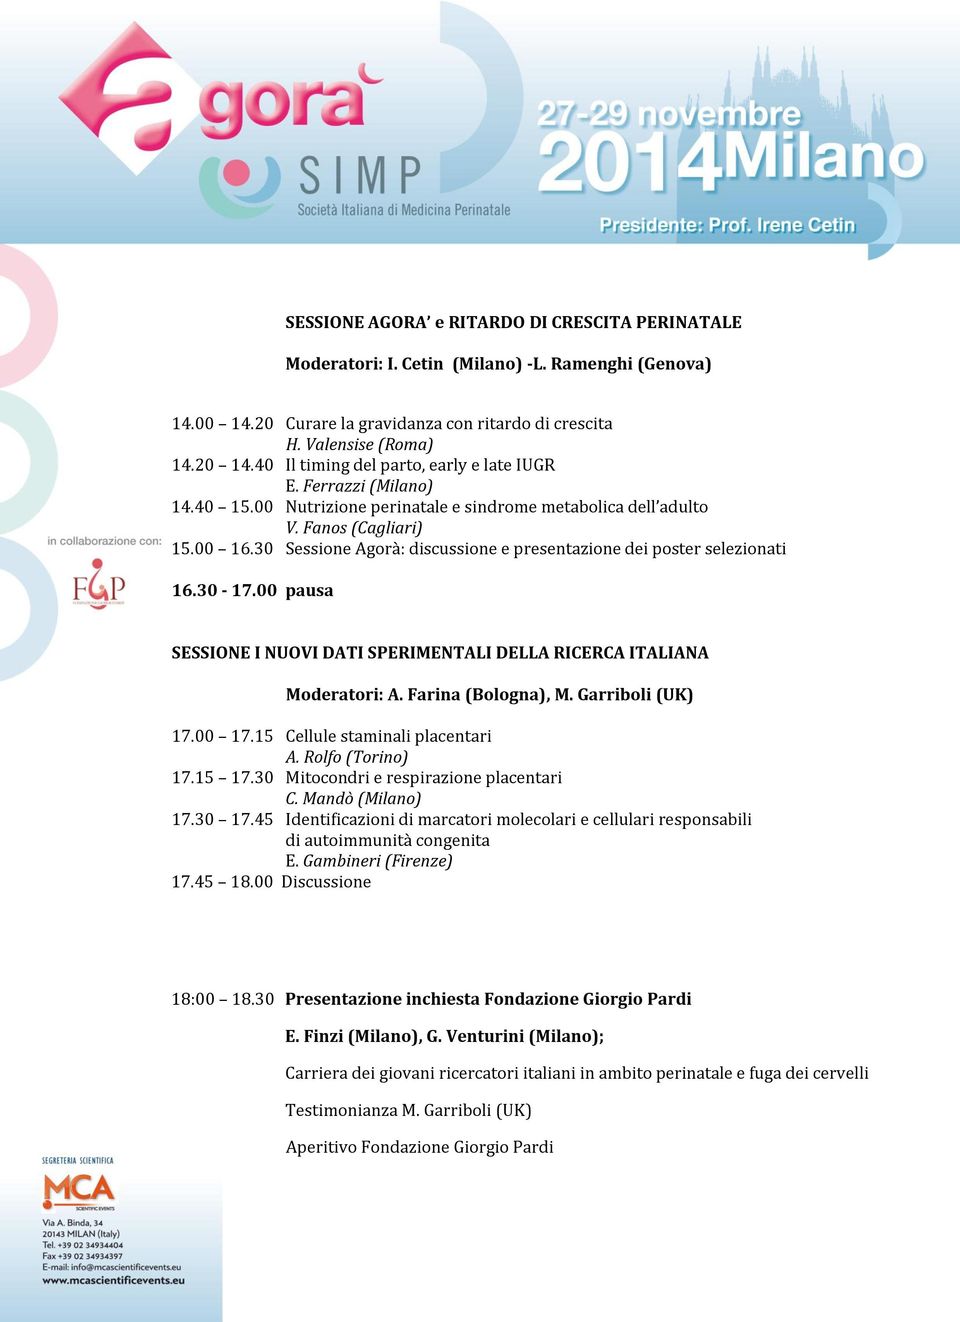 30 Sessione Agorà: discussione e presentazione dei poster selezionati 16.30-17.00 pausa SESSIONE I NUOVI DATI SPERIMENTALI DELLA RICERCA ITALIANA Moderatori: A. Farina (Bologna), M. Garriboli (UK) 17.